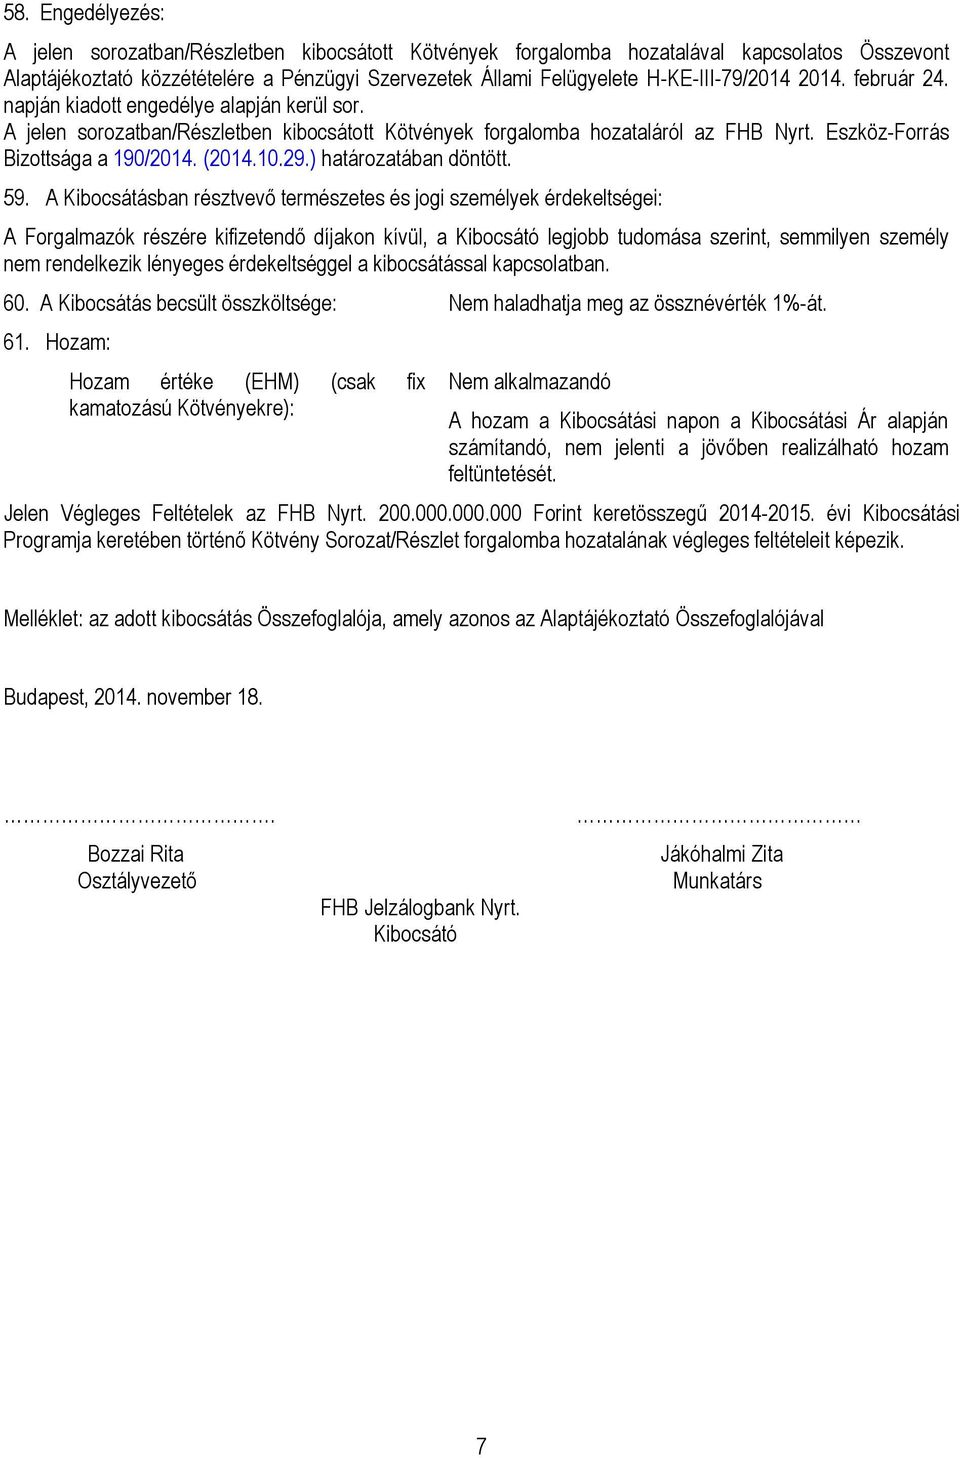 Eszköz-Forrás Bizottsága a 190/2014. (2014.10.29.) határozatában döntött. 59.